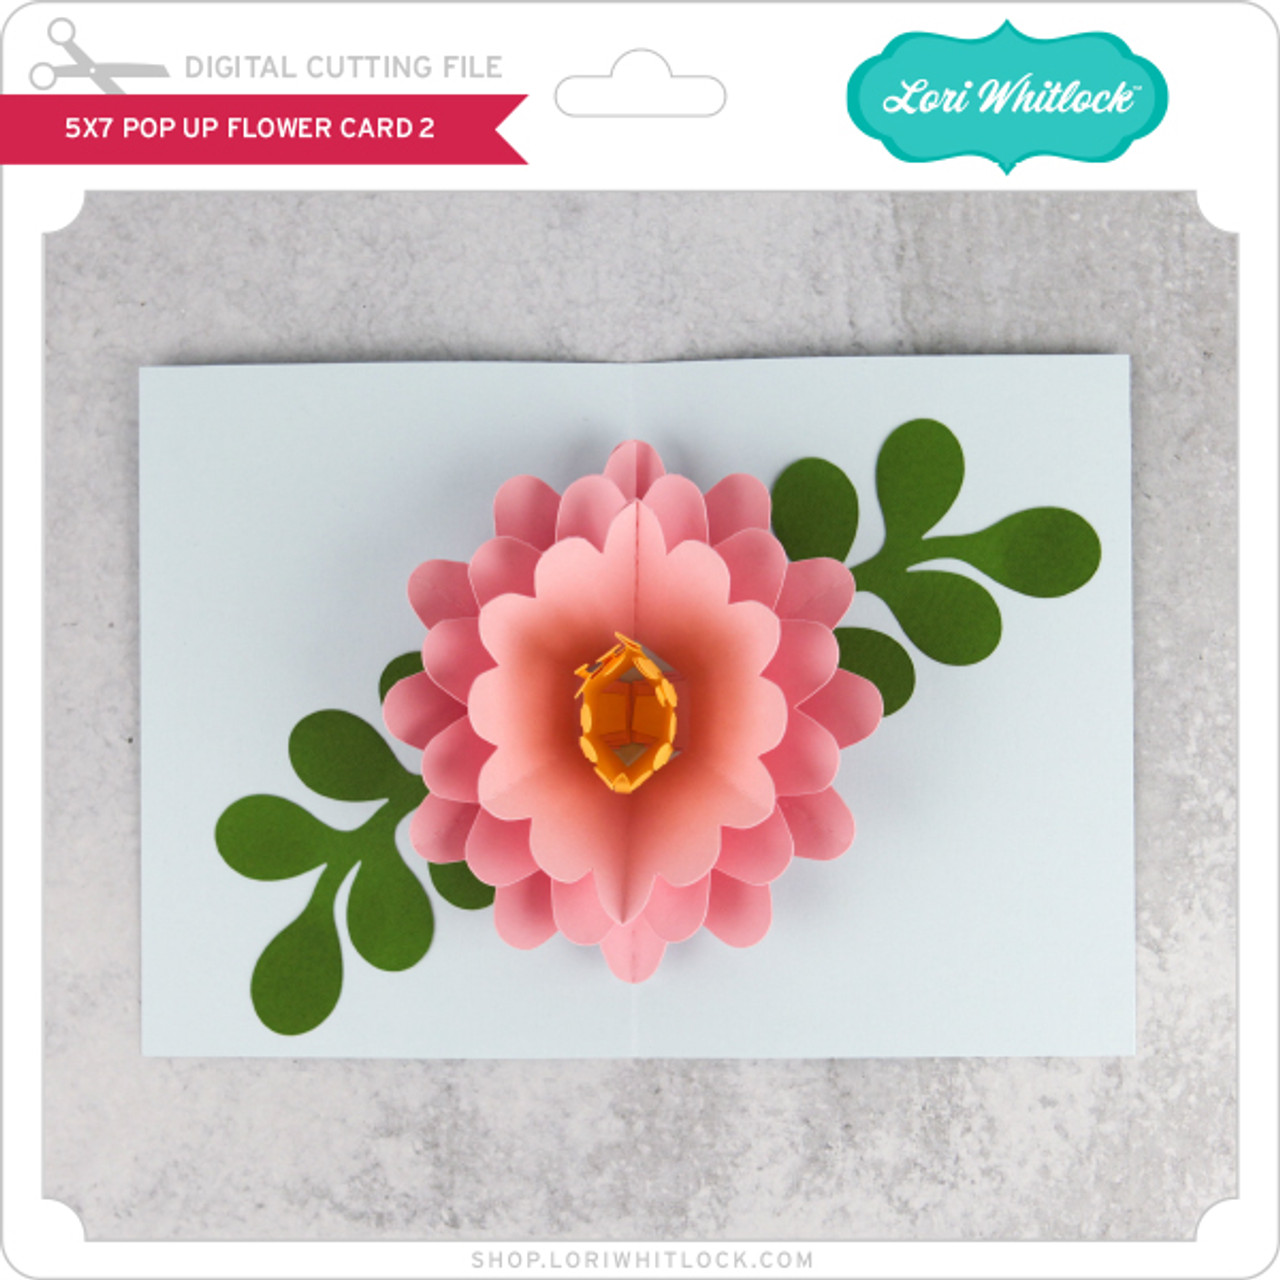 Ingen peber I første omgang 5x7 Pop Up Flower Card 2 - Lori Whitlock's SVG Shop